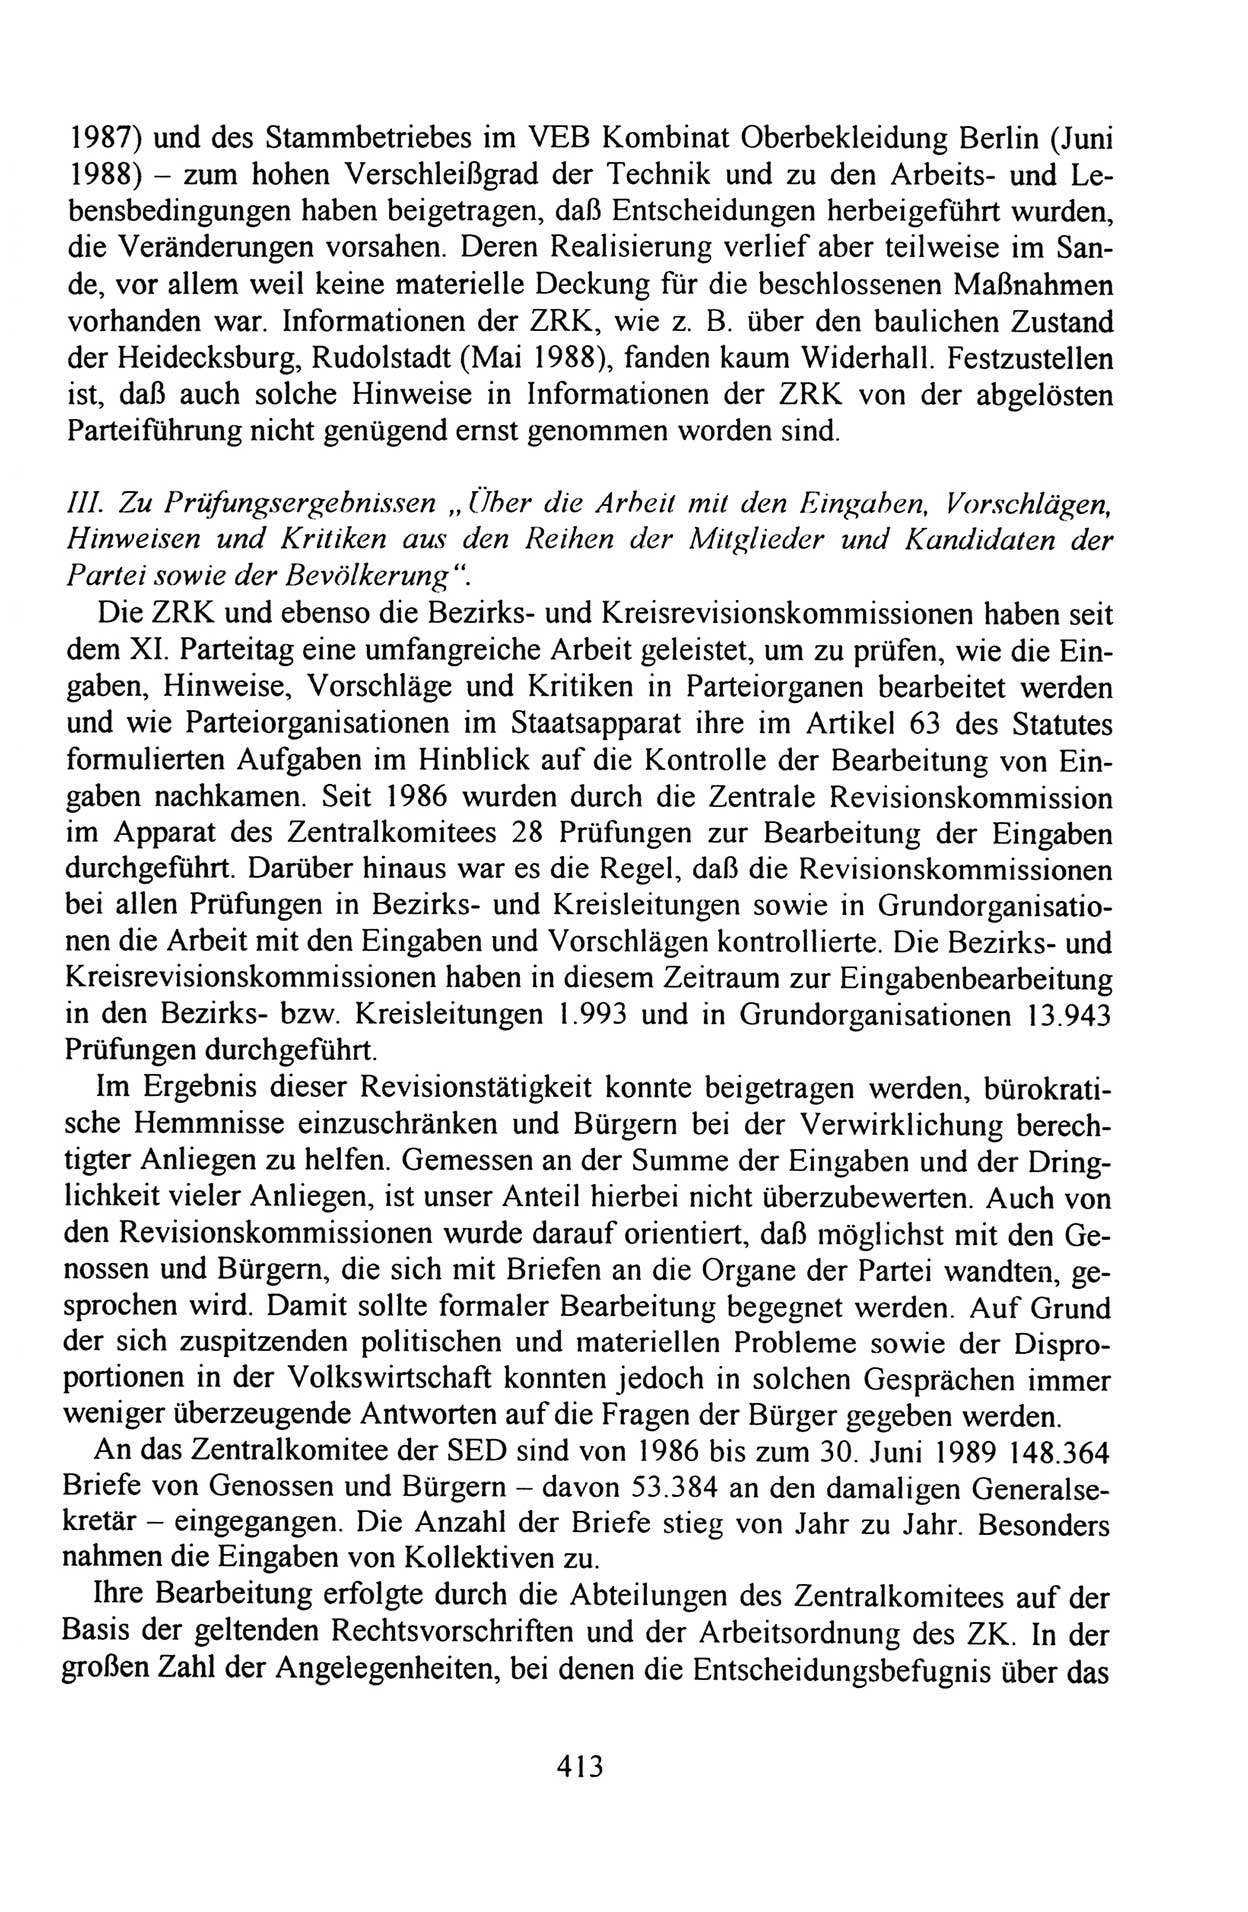 Außerordentlicher Parteitag der SED/PDS (Sozialistische Einheitspartei Deutschlands/Partei des Demokratischen Sozialismus) [Deutsche Demokratische Republik (DDR)], Protokoll der Beratungen am 8./9. und 16./17.12.1989 in Berlin 1989, Seite 413 (PT. SED/PDS DDR Prot. 1989, S. 413)